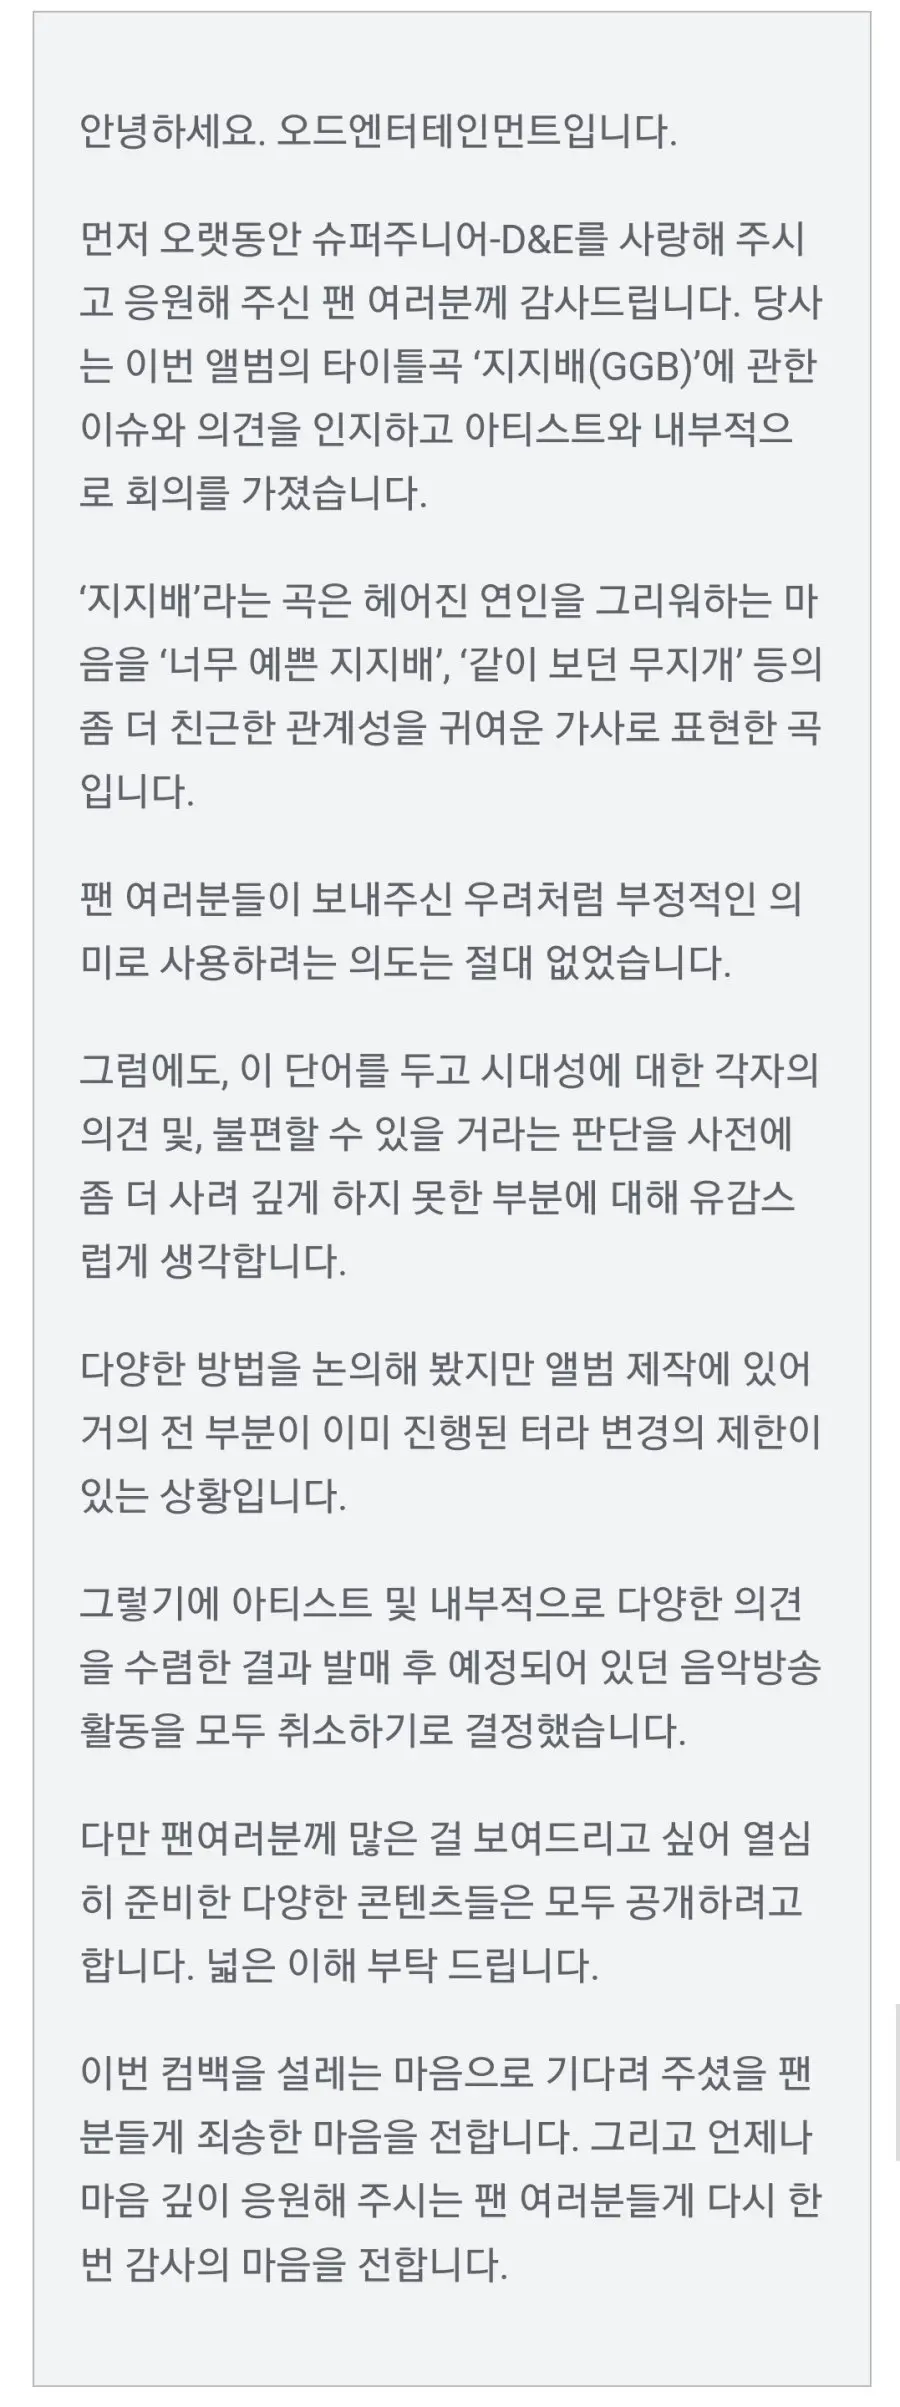 슈퍼주니어-D&E, '여혐논란'으로 방송 모두 취소 | mbong.kr 엠봉